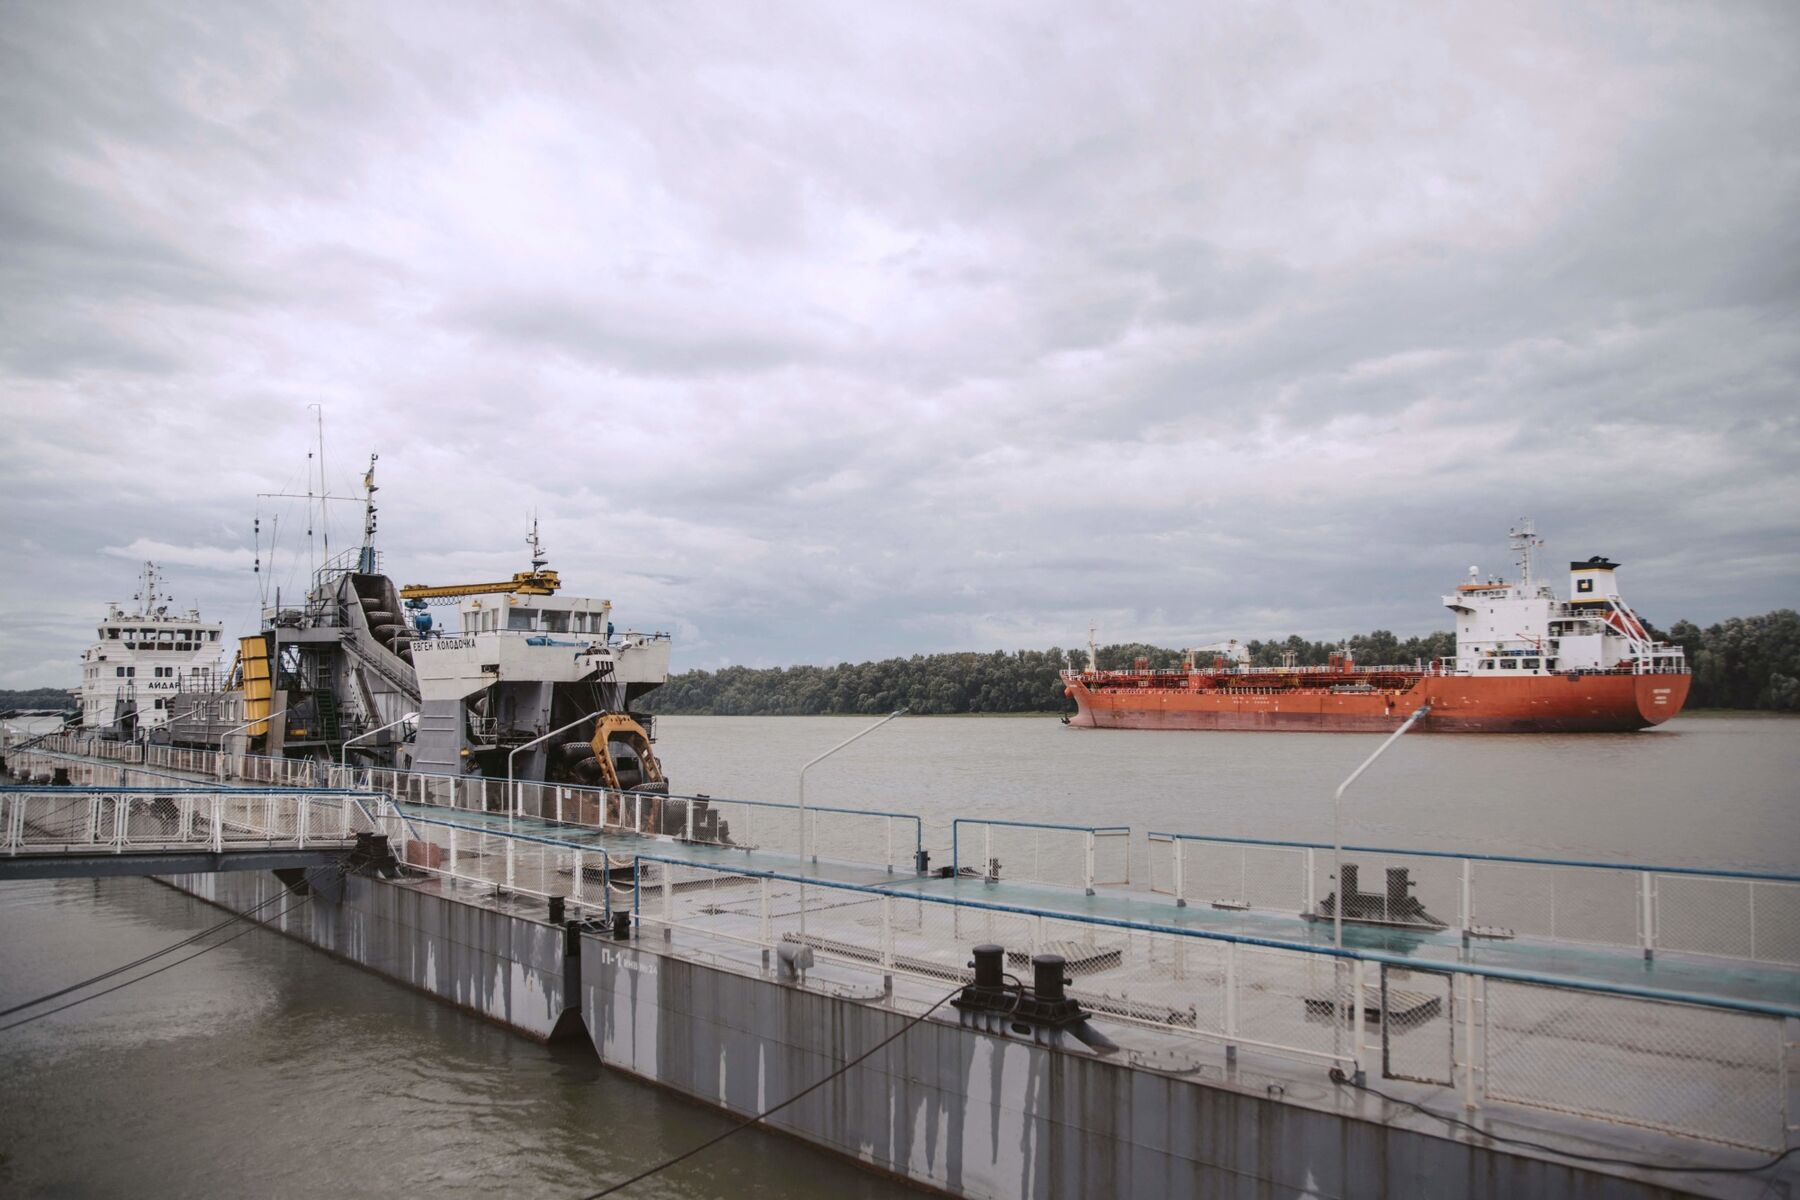 Україна планує новий експортний маршрут Дунаєм, щоб подолати польську блокаду